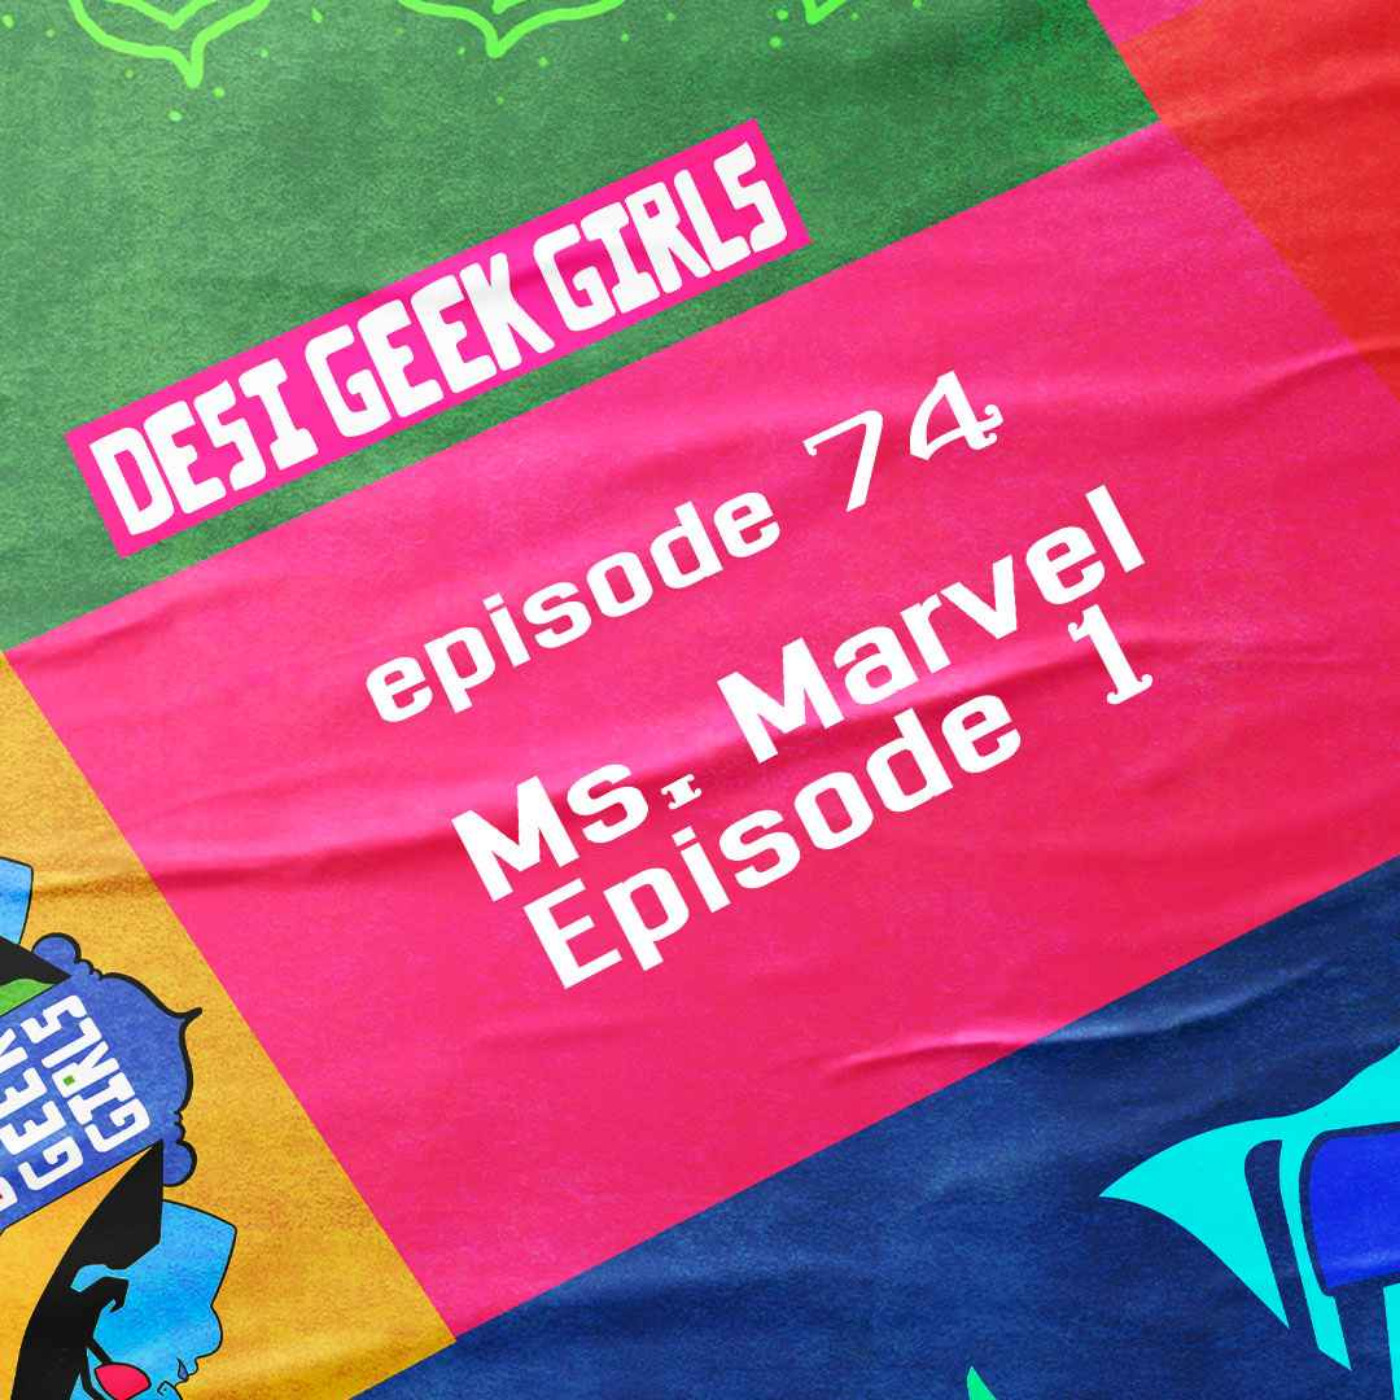 Ms. Marvel, Episode 1!